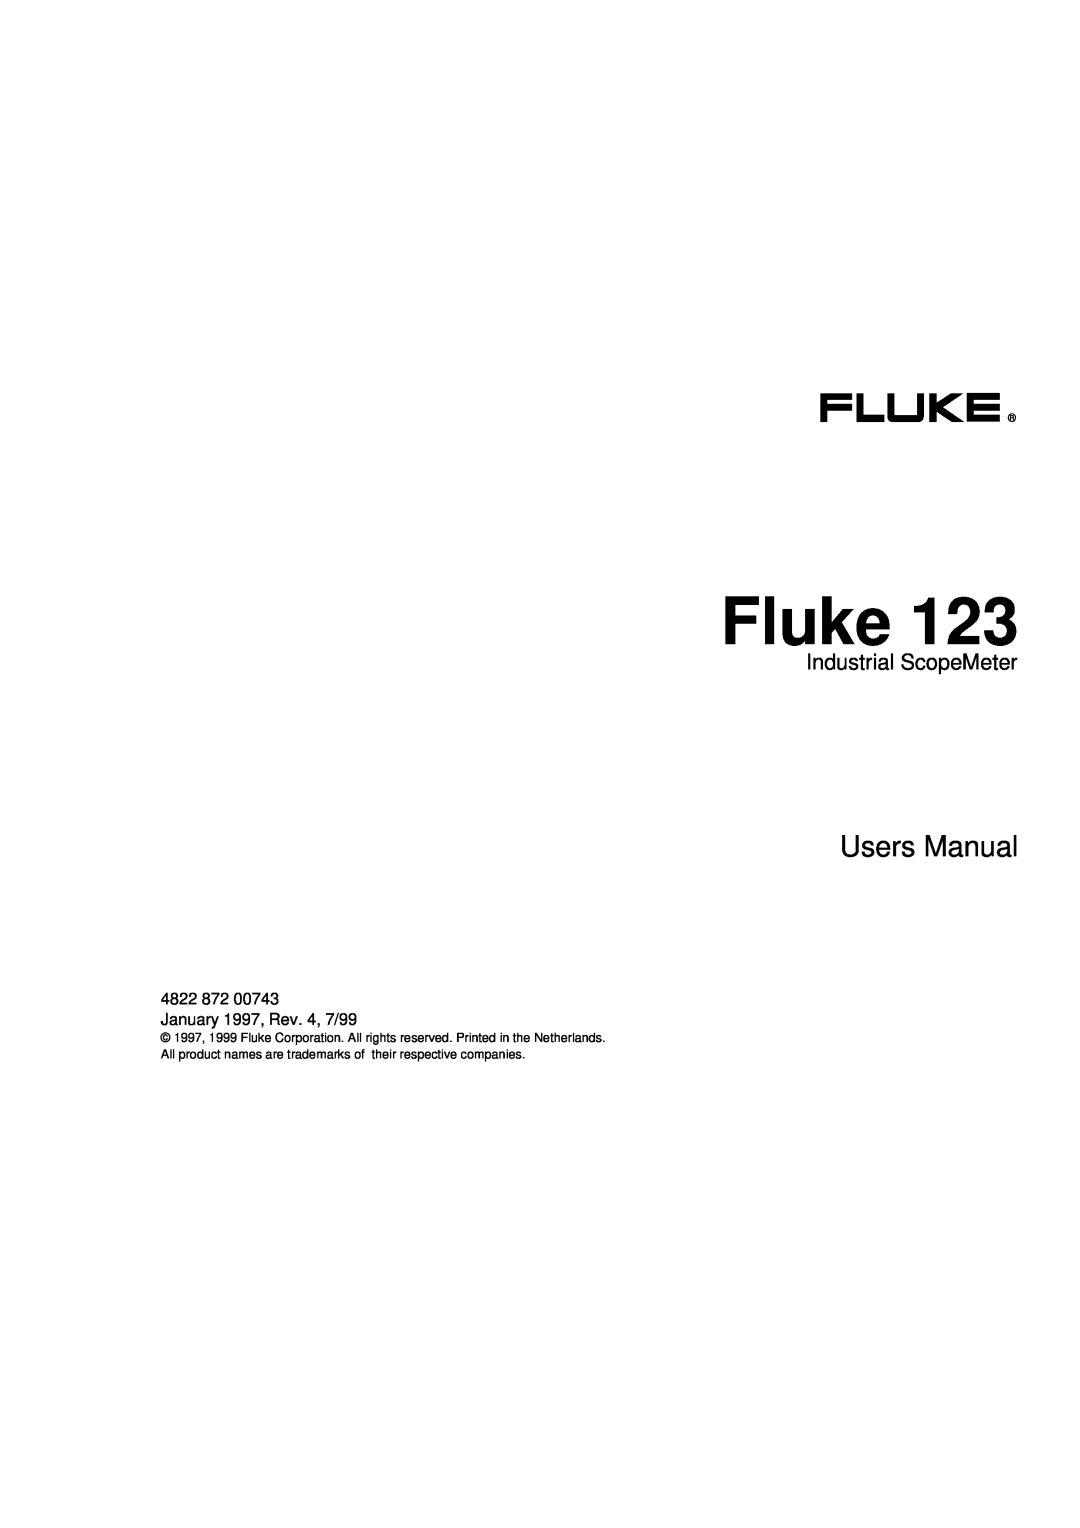 Fluke fluke123 user manual Fluke, Users Manual, Industrial ScopeMeter 